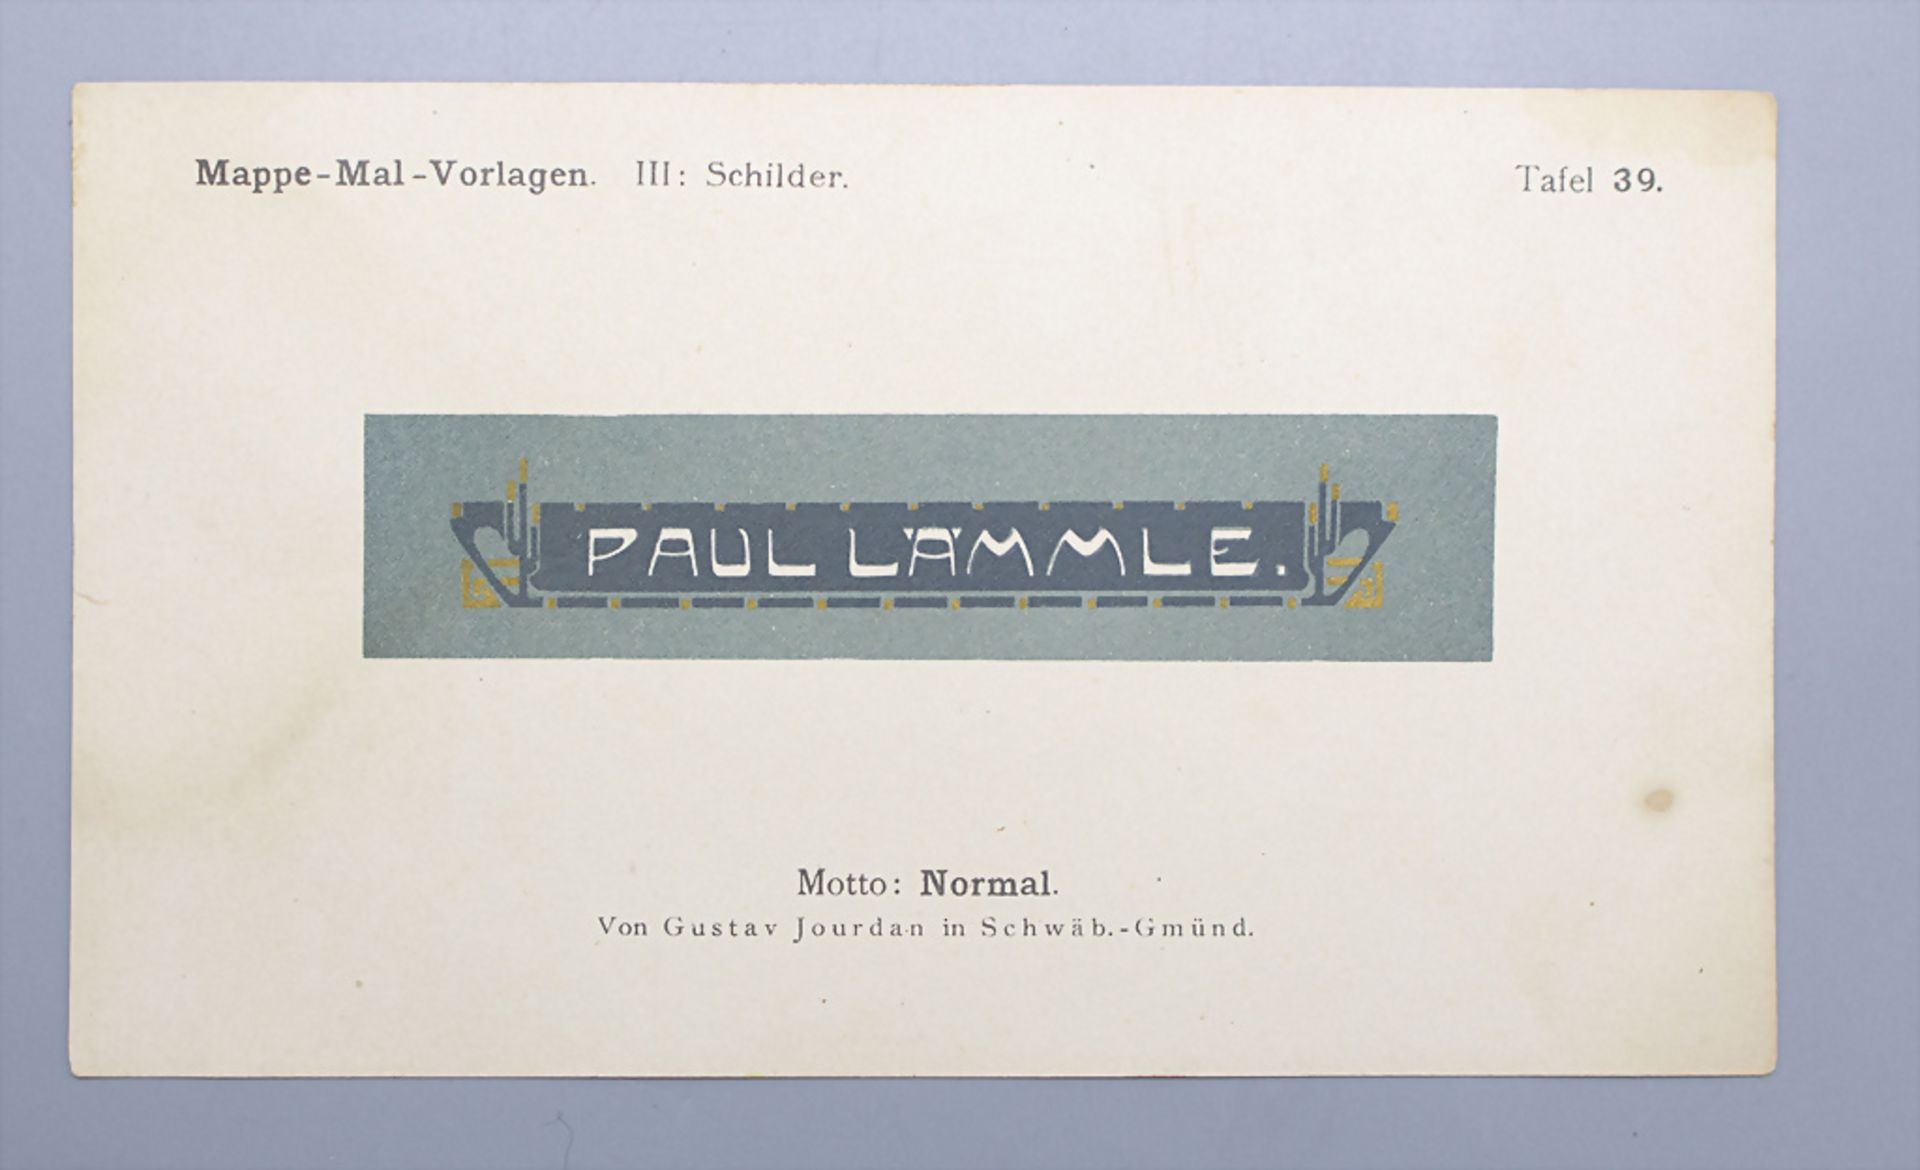 Jugendstil Mal-Vorlagen für Werbeschilder auf 36 Tafeln / 36 Art Nouveau pattern for ... - Bild 2 aus 9